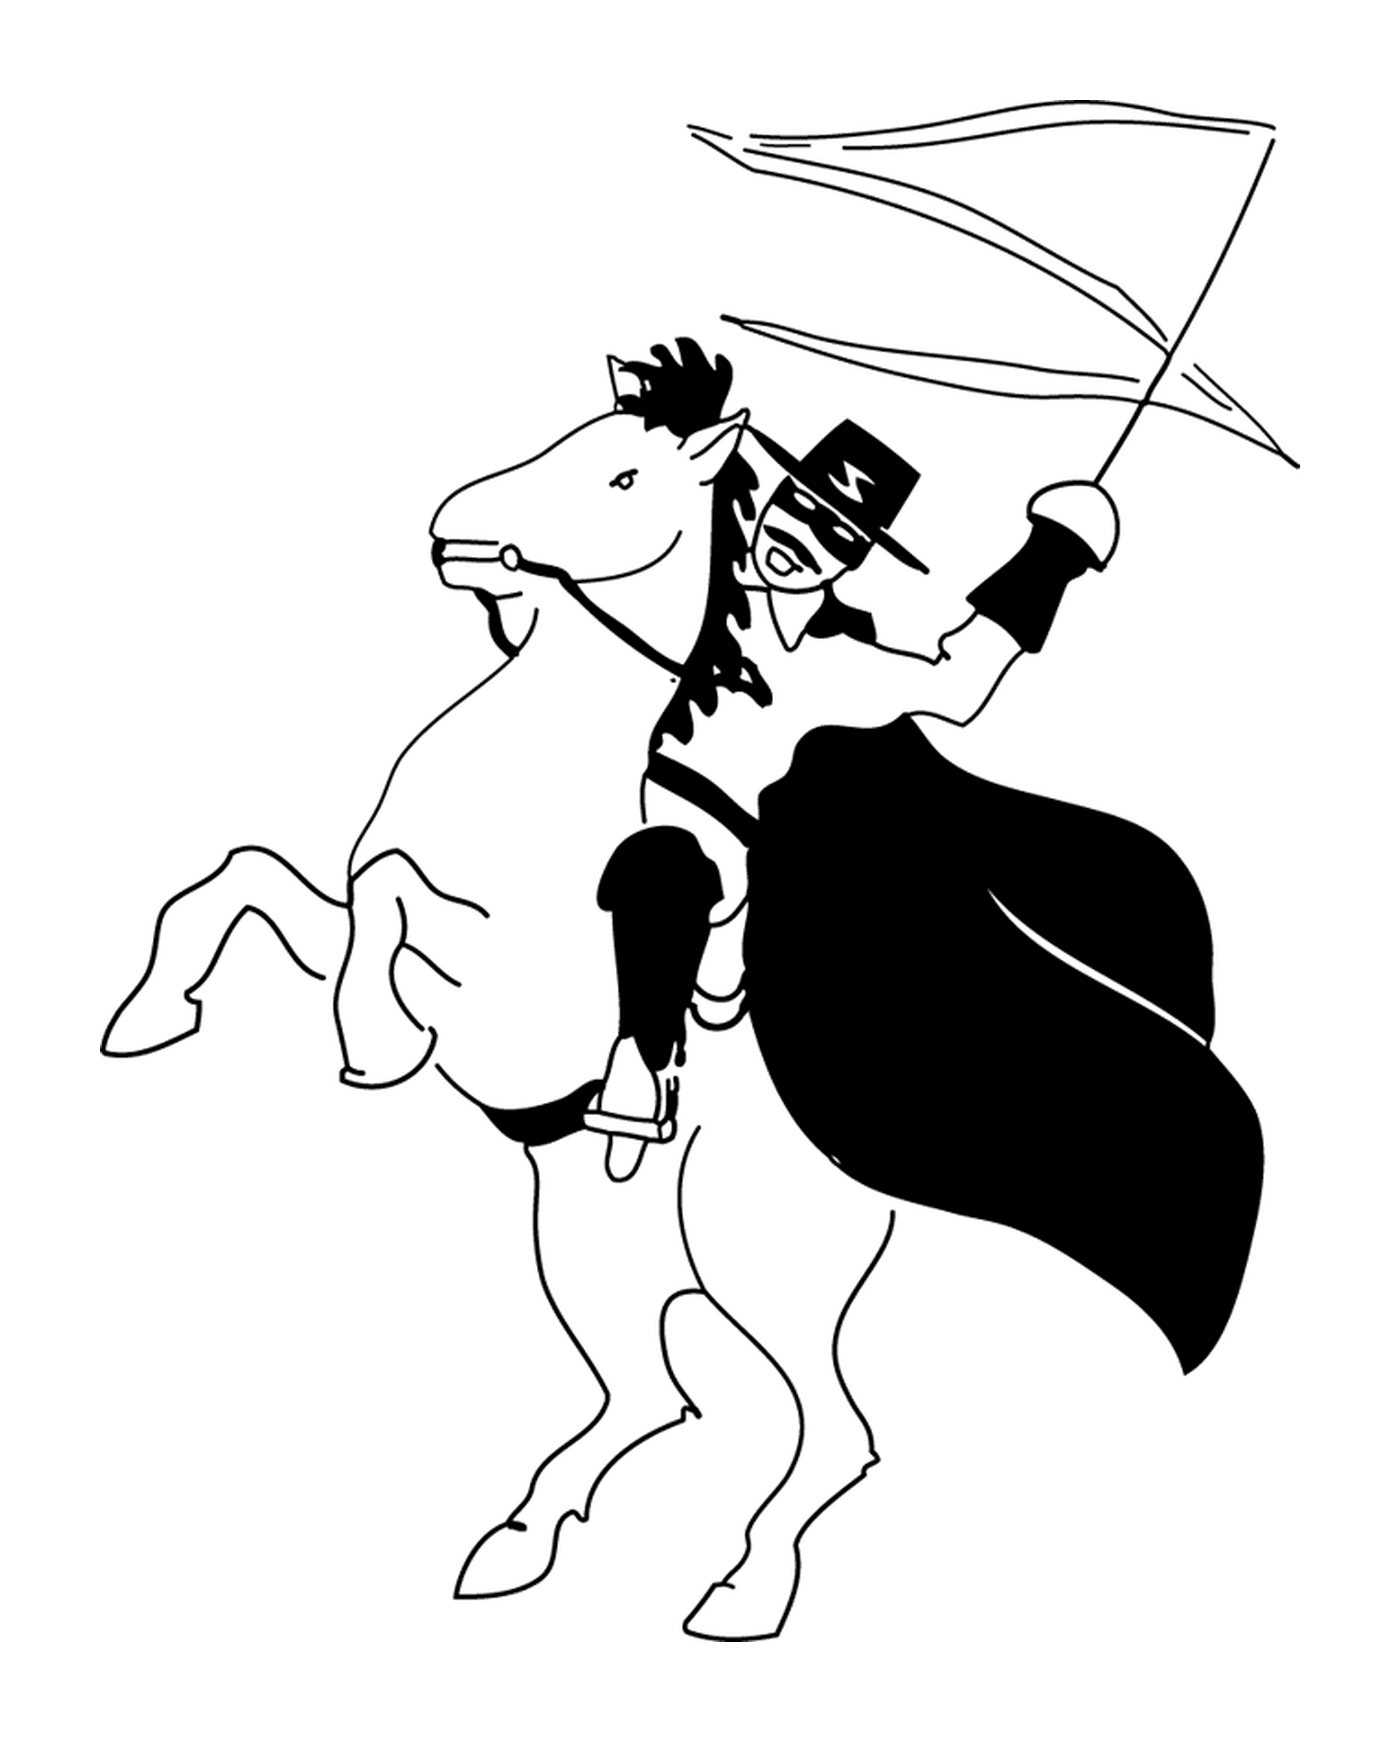 Zorro sur son cheval Tornado